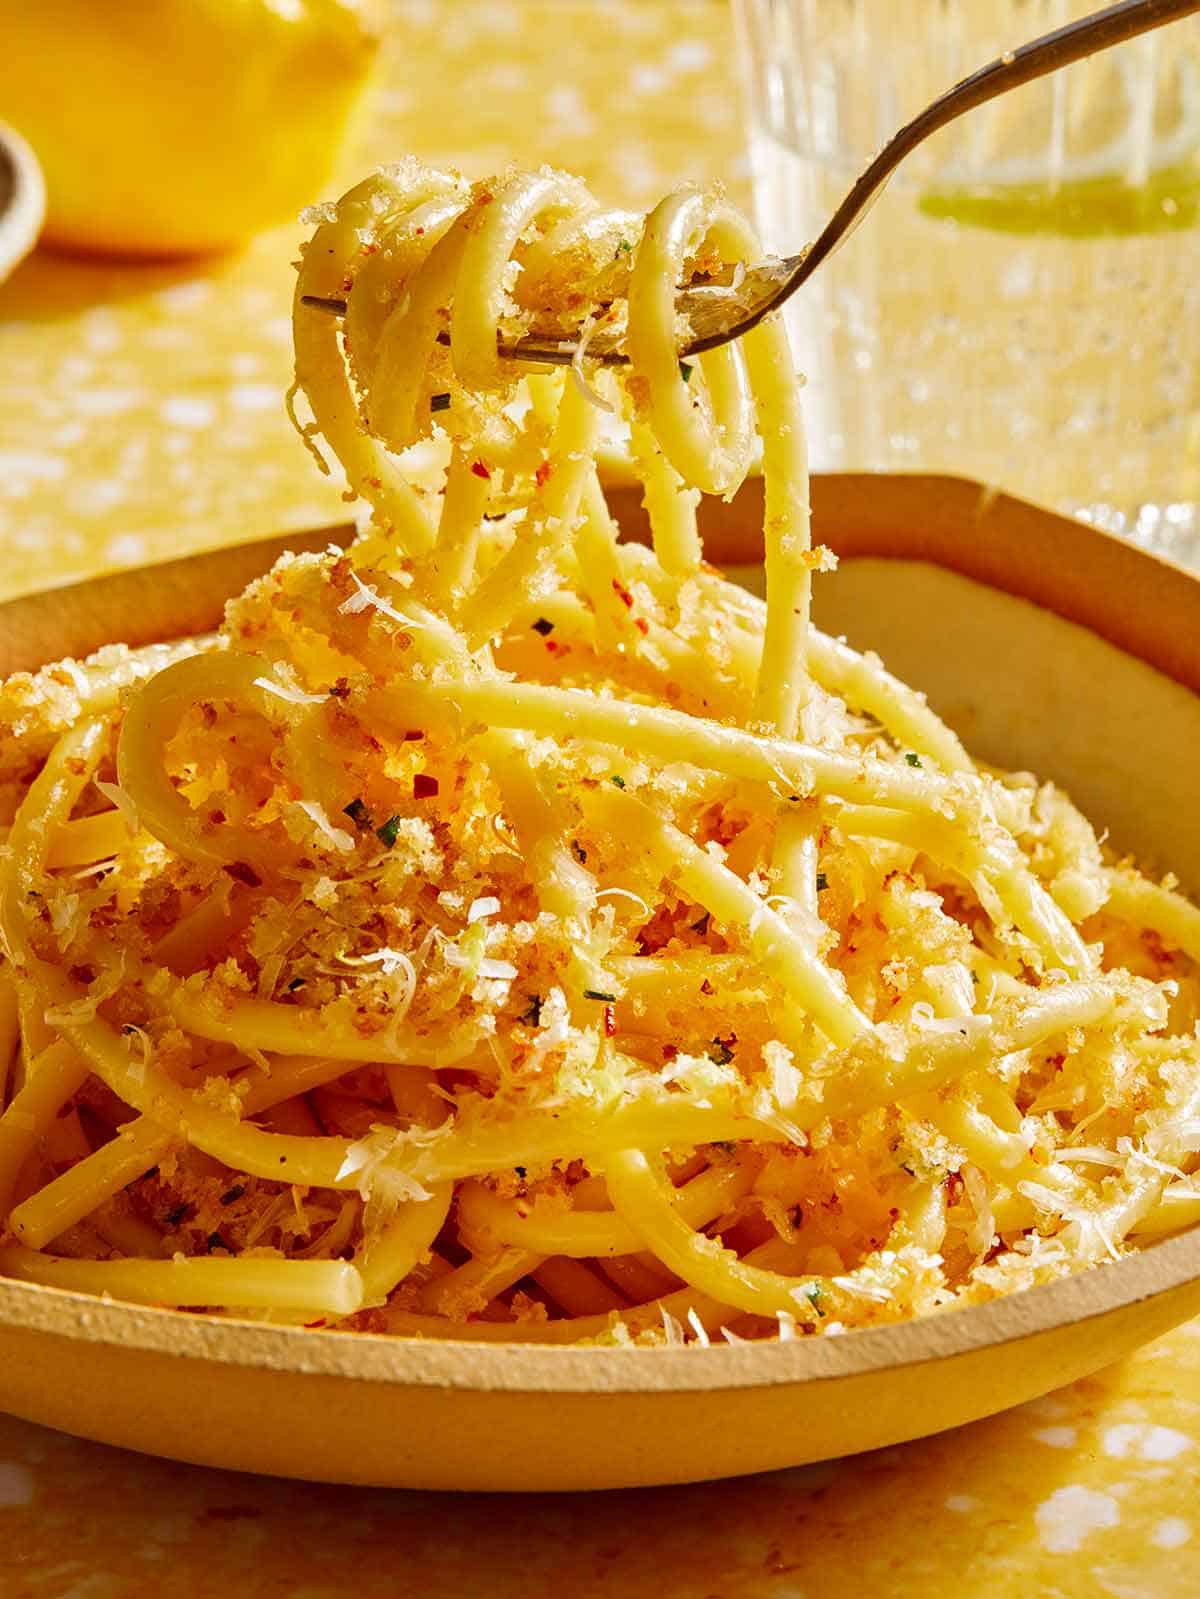 Garlic lemon pasta being eaten with a fork. 